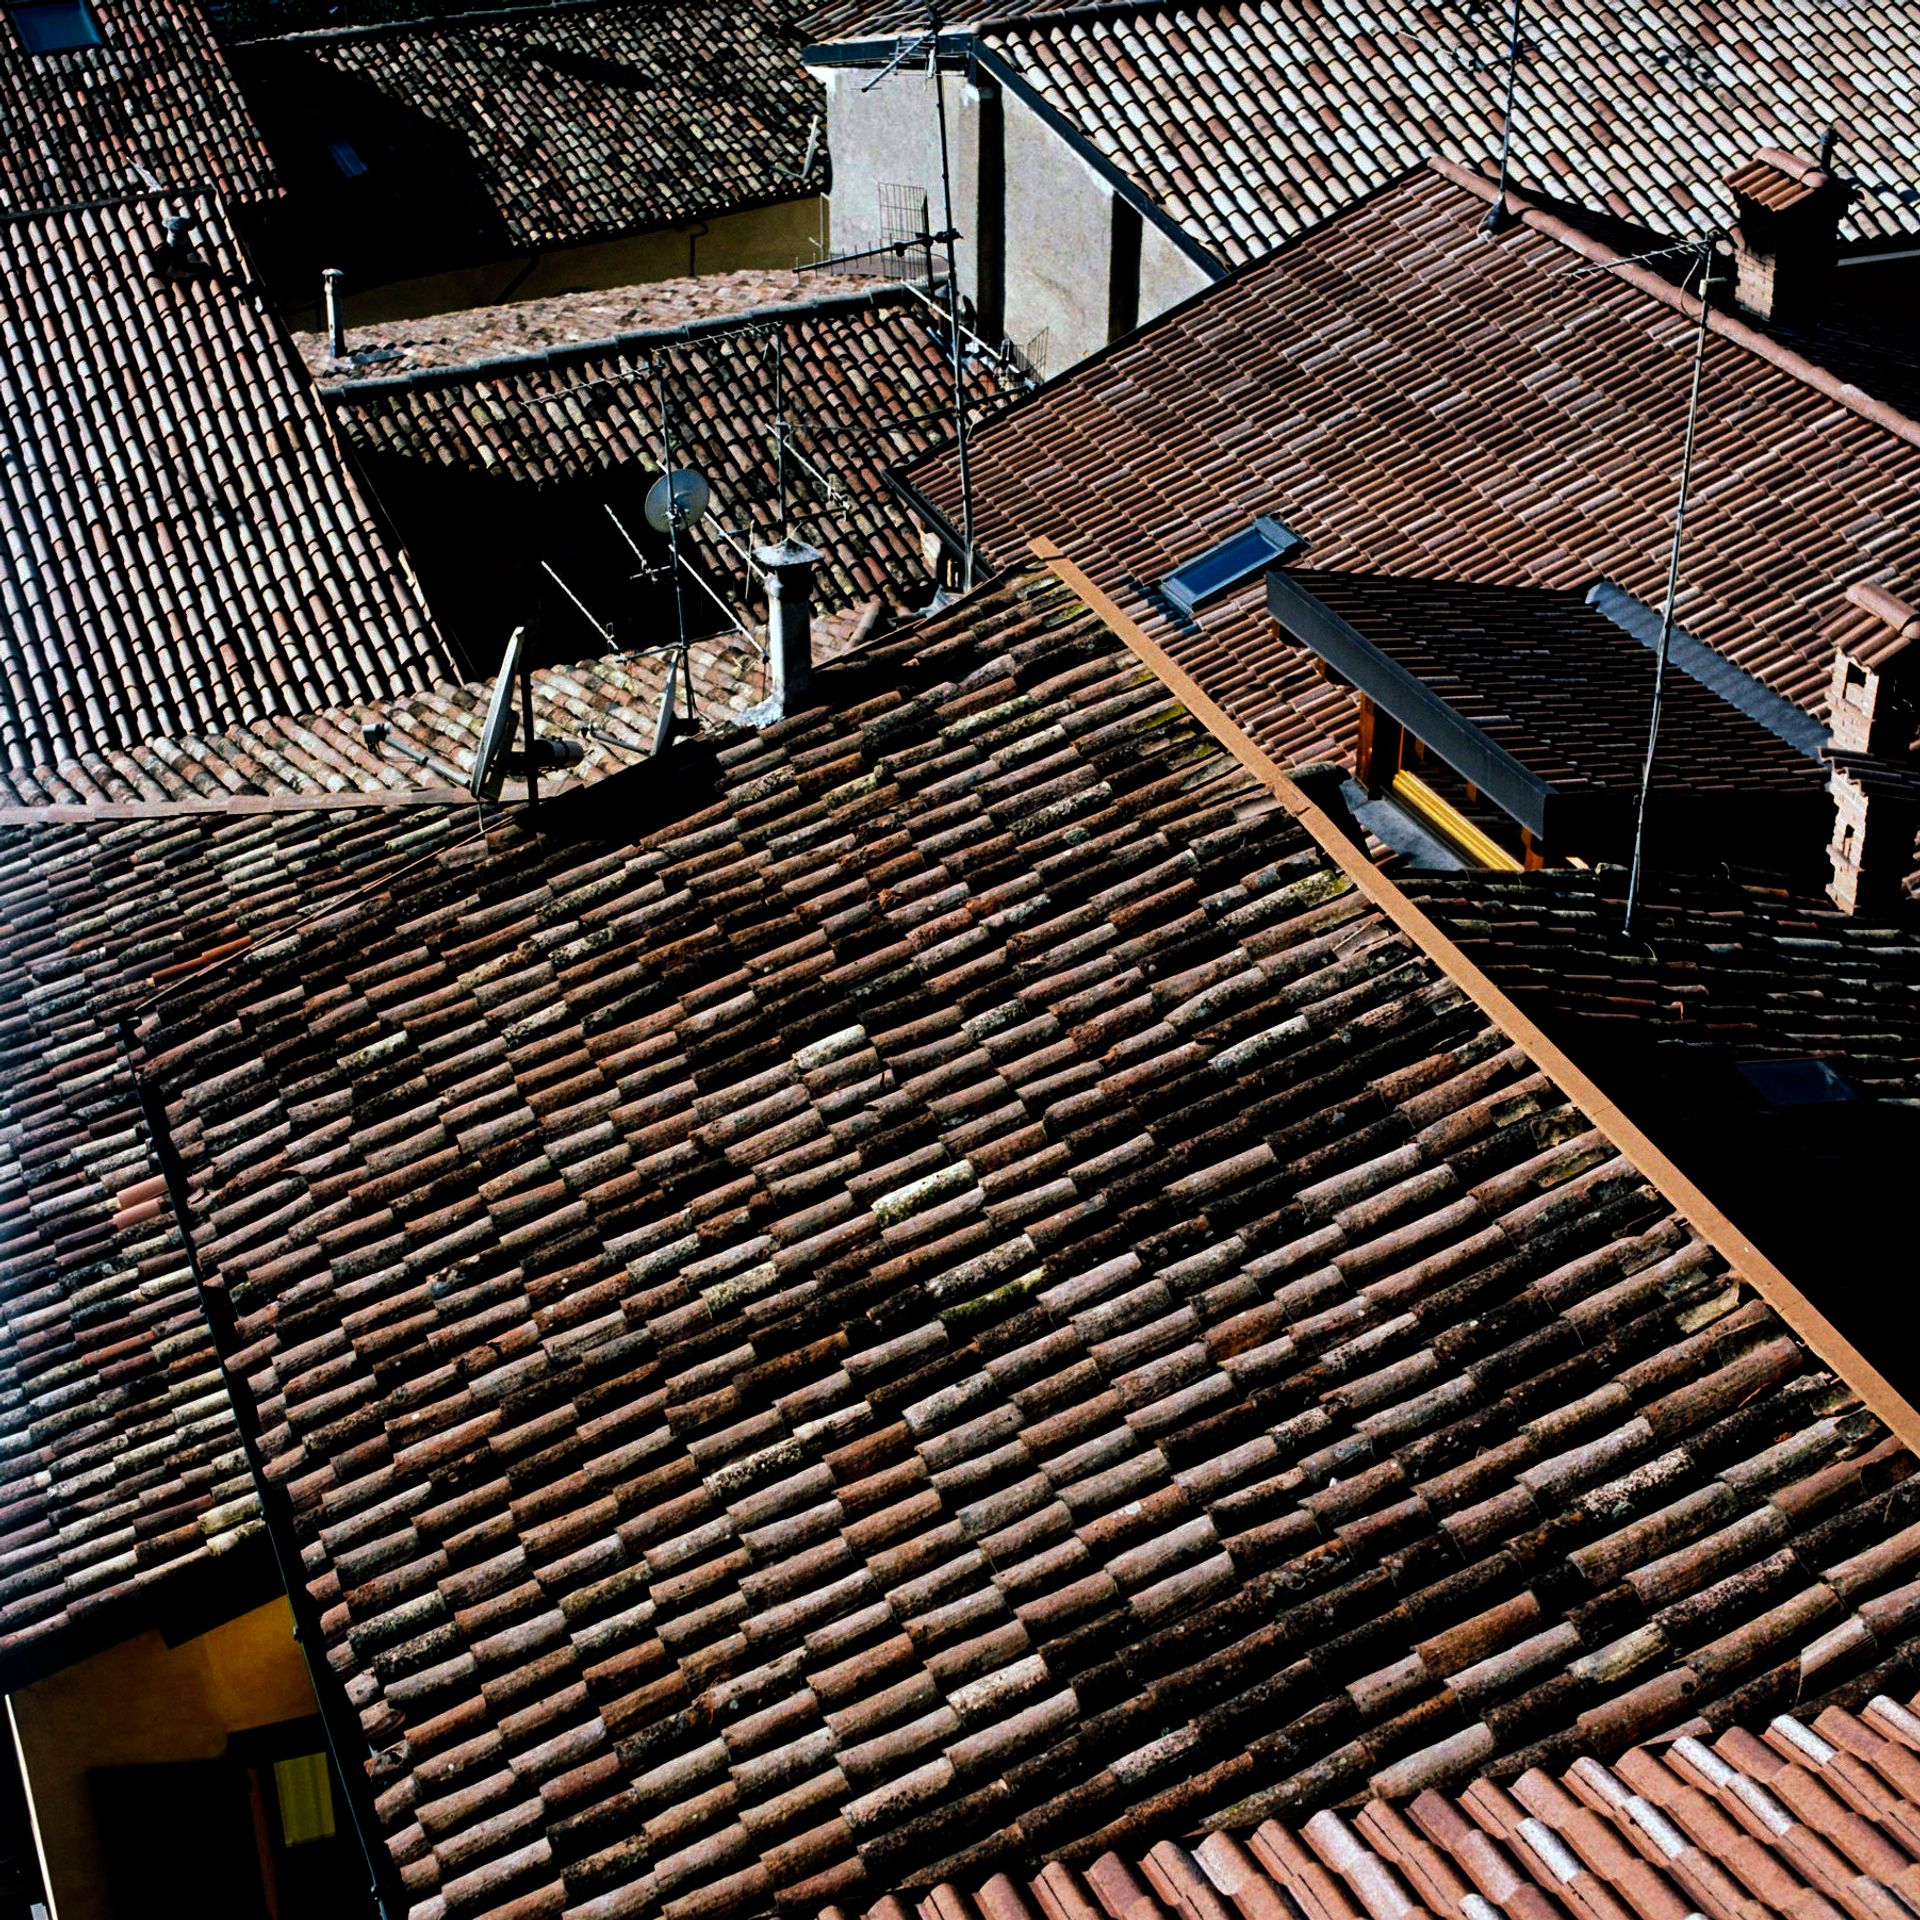 roofs in Italy. street photo by Mariano Herrera